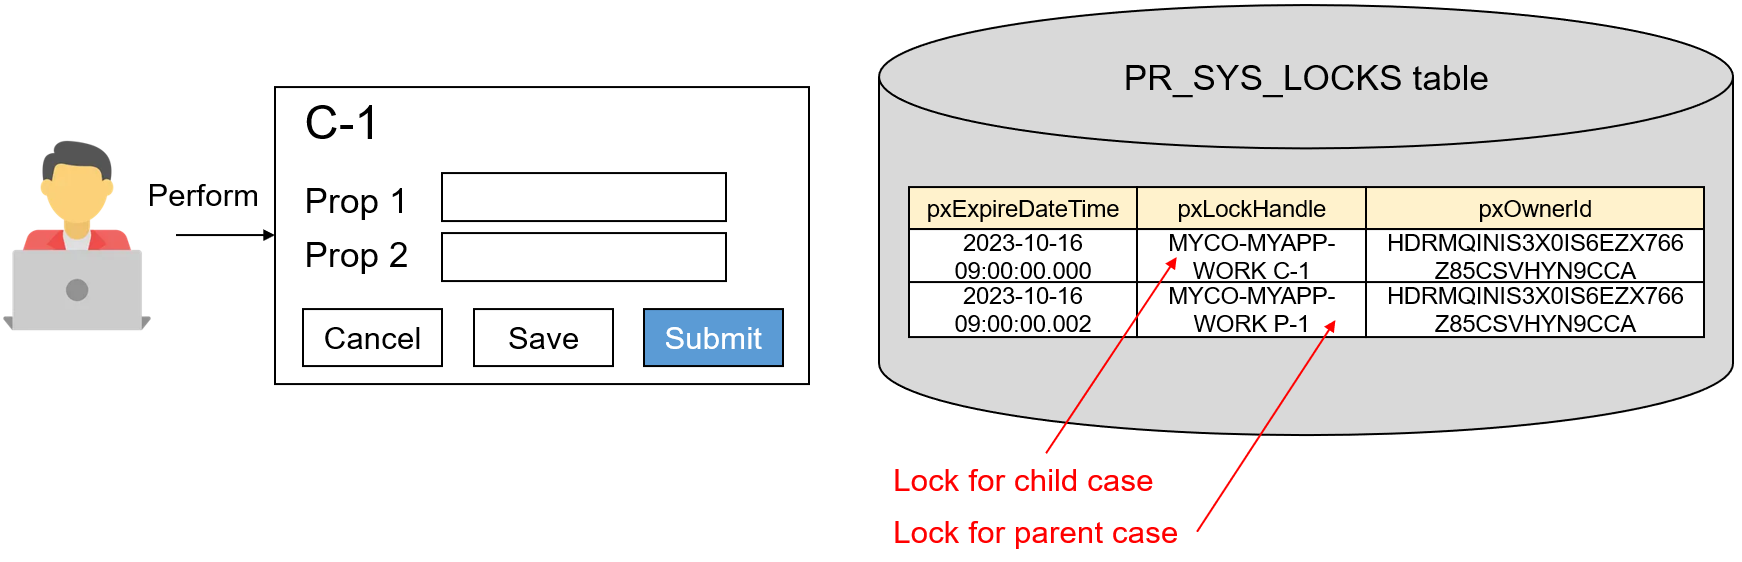 PR_SYS_LOCKS when child case is locked